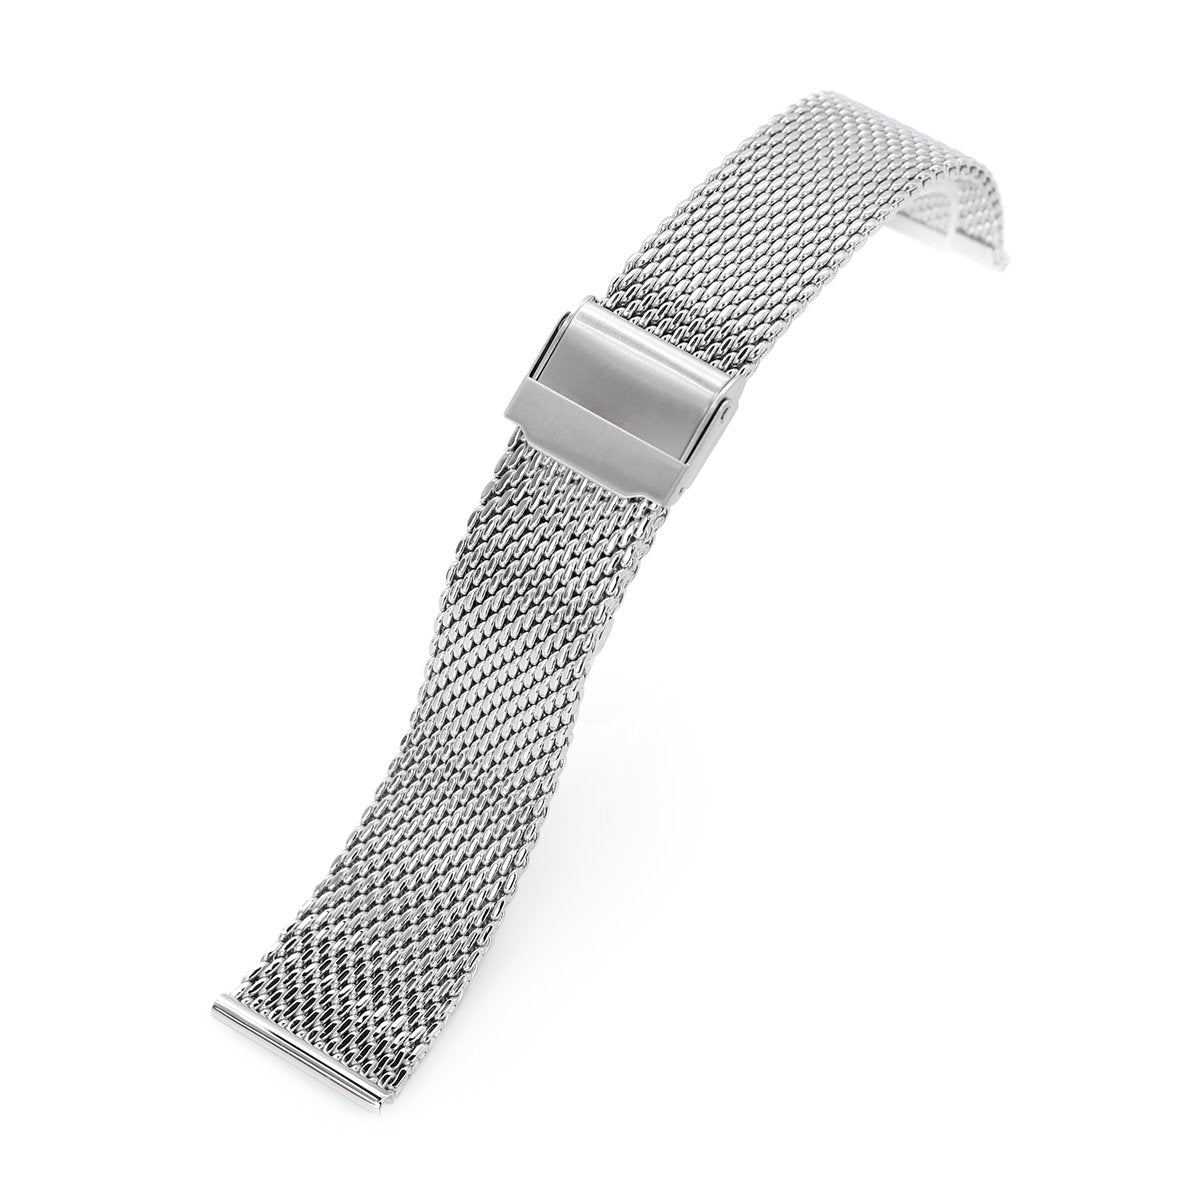 Браслет 22 мм купить. 22 Mm watch Band браслет. MILTAT браслет. Меш браслет для часов. Браслет конусный для часов.